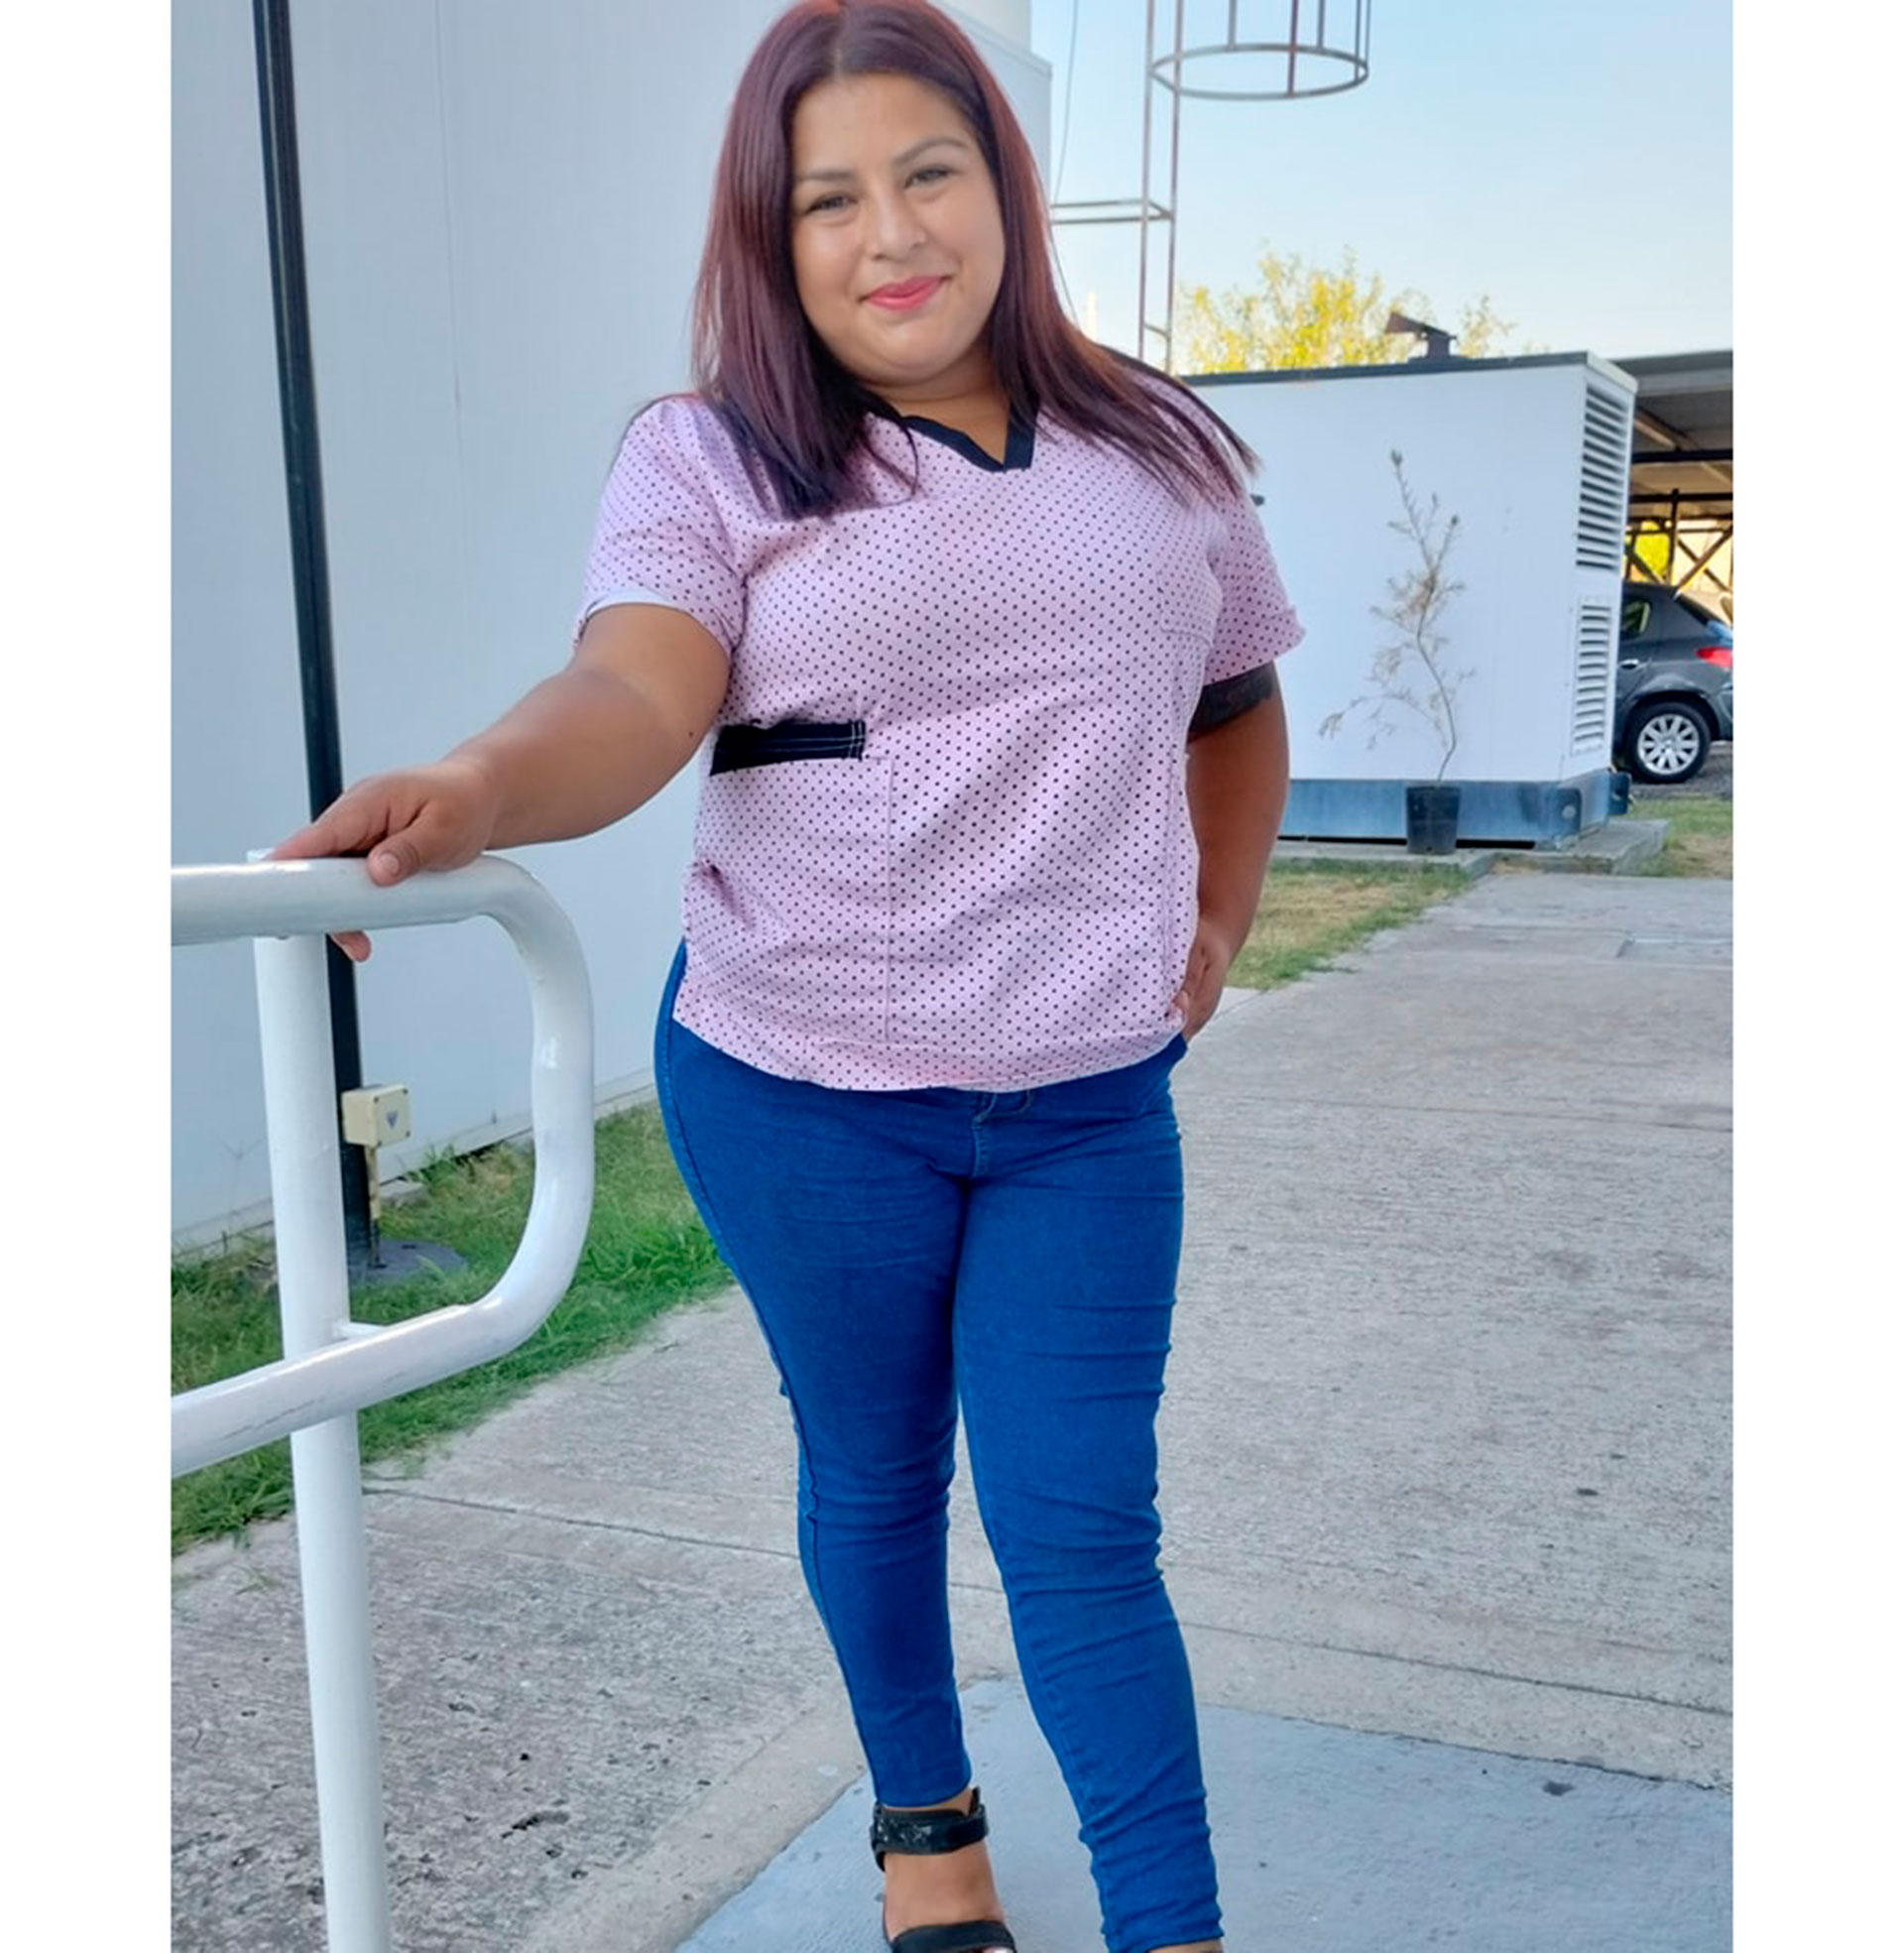 "Me recibí de enfermera, pero nunca ejercí", dice Elba Rodríguez (Foto: Instagram)